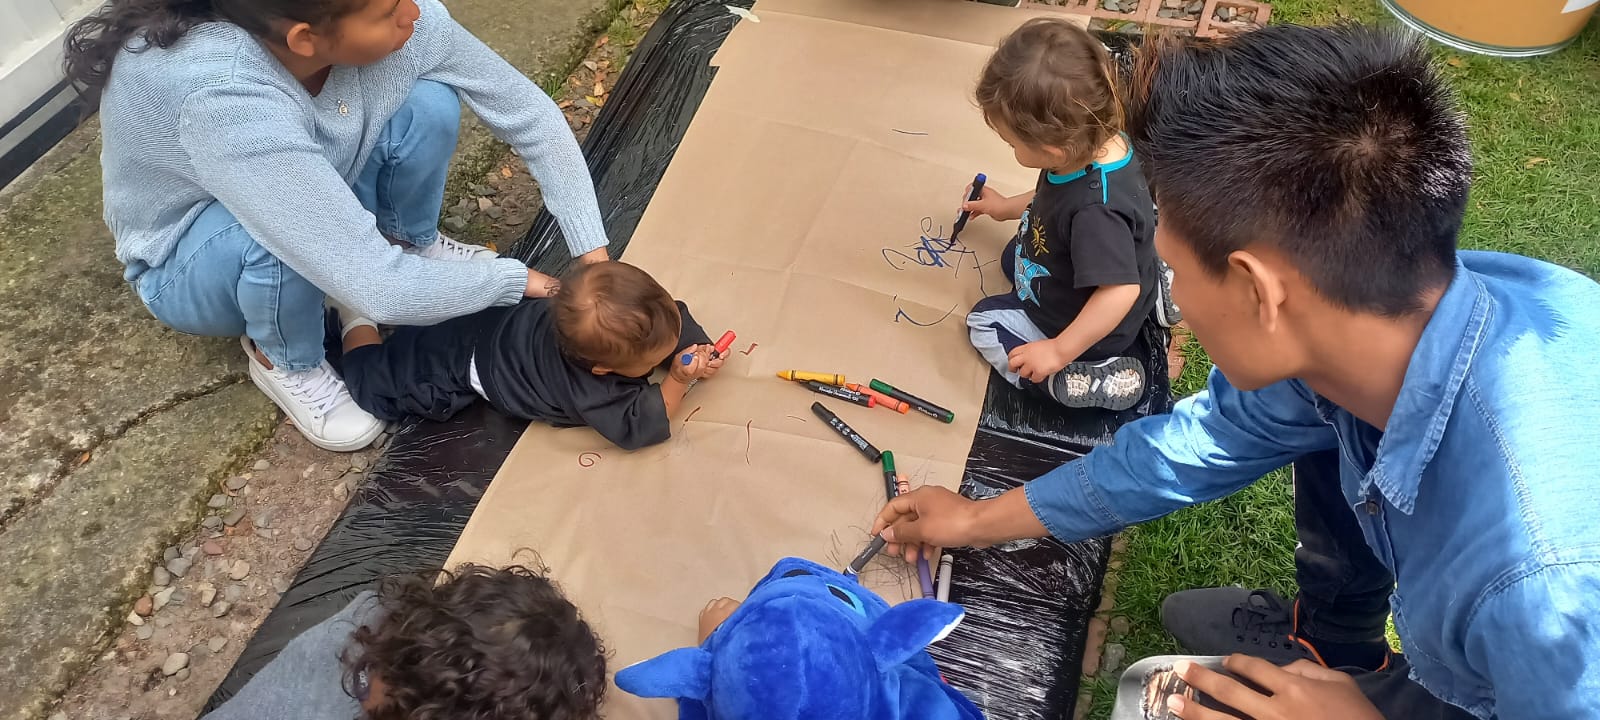 bebés rayando un papel con crayolas 